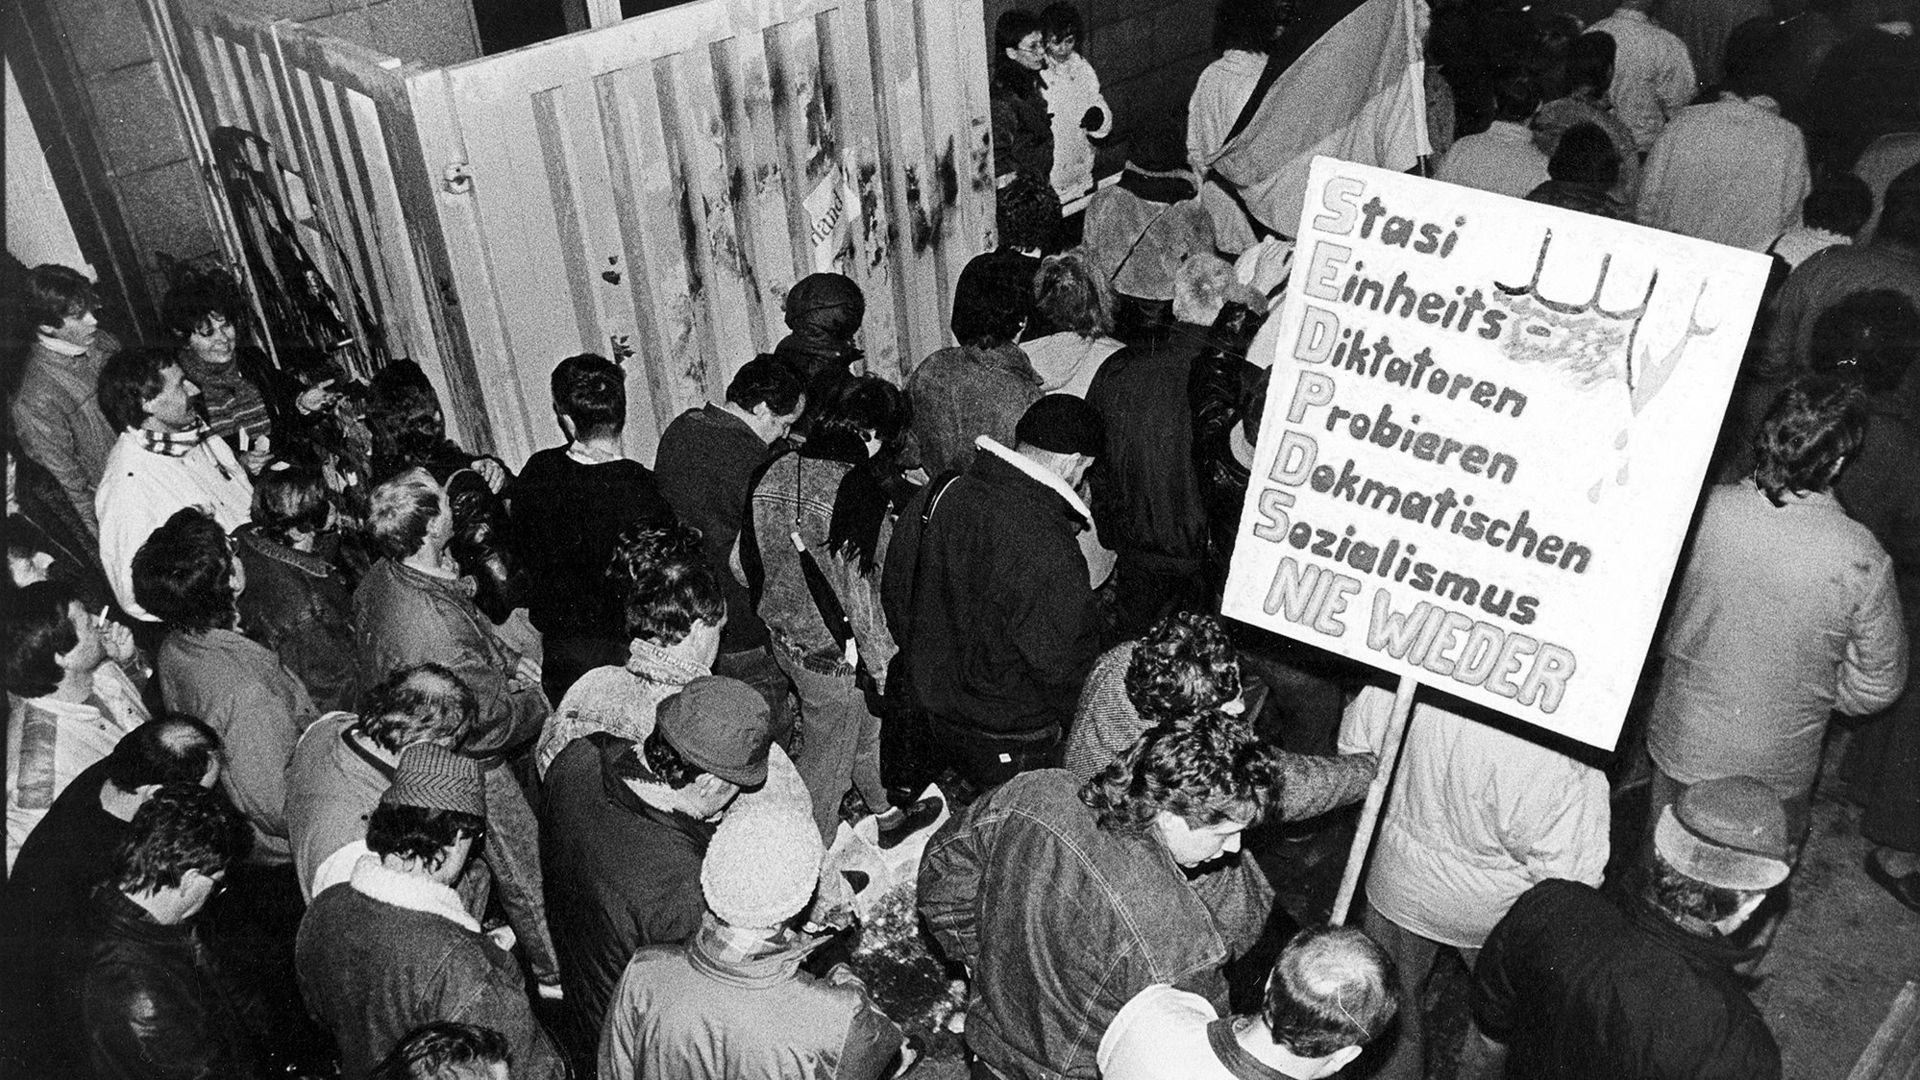 Das Bild zeigt Menschen, die durch ein geöffnetes Tor strömen und Plakate bei sich tragen. Auf einem ist zu lesen: Stasi / Einheits / Diktatoren / Probieren / Demokratischen / Sozialismus / Nie Wieder "